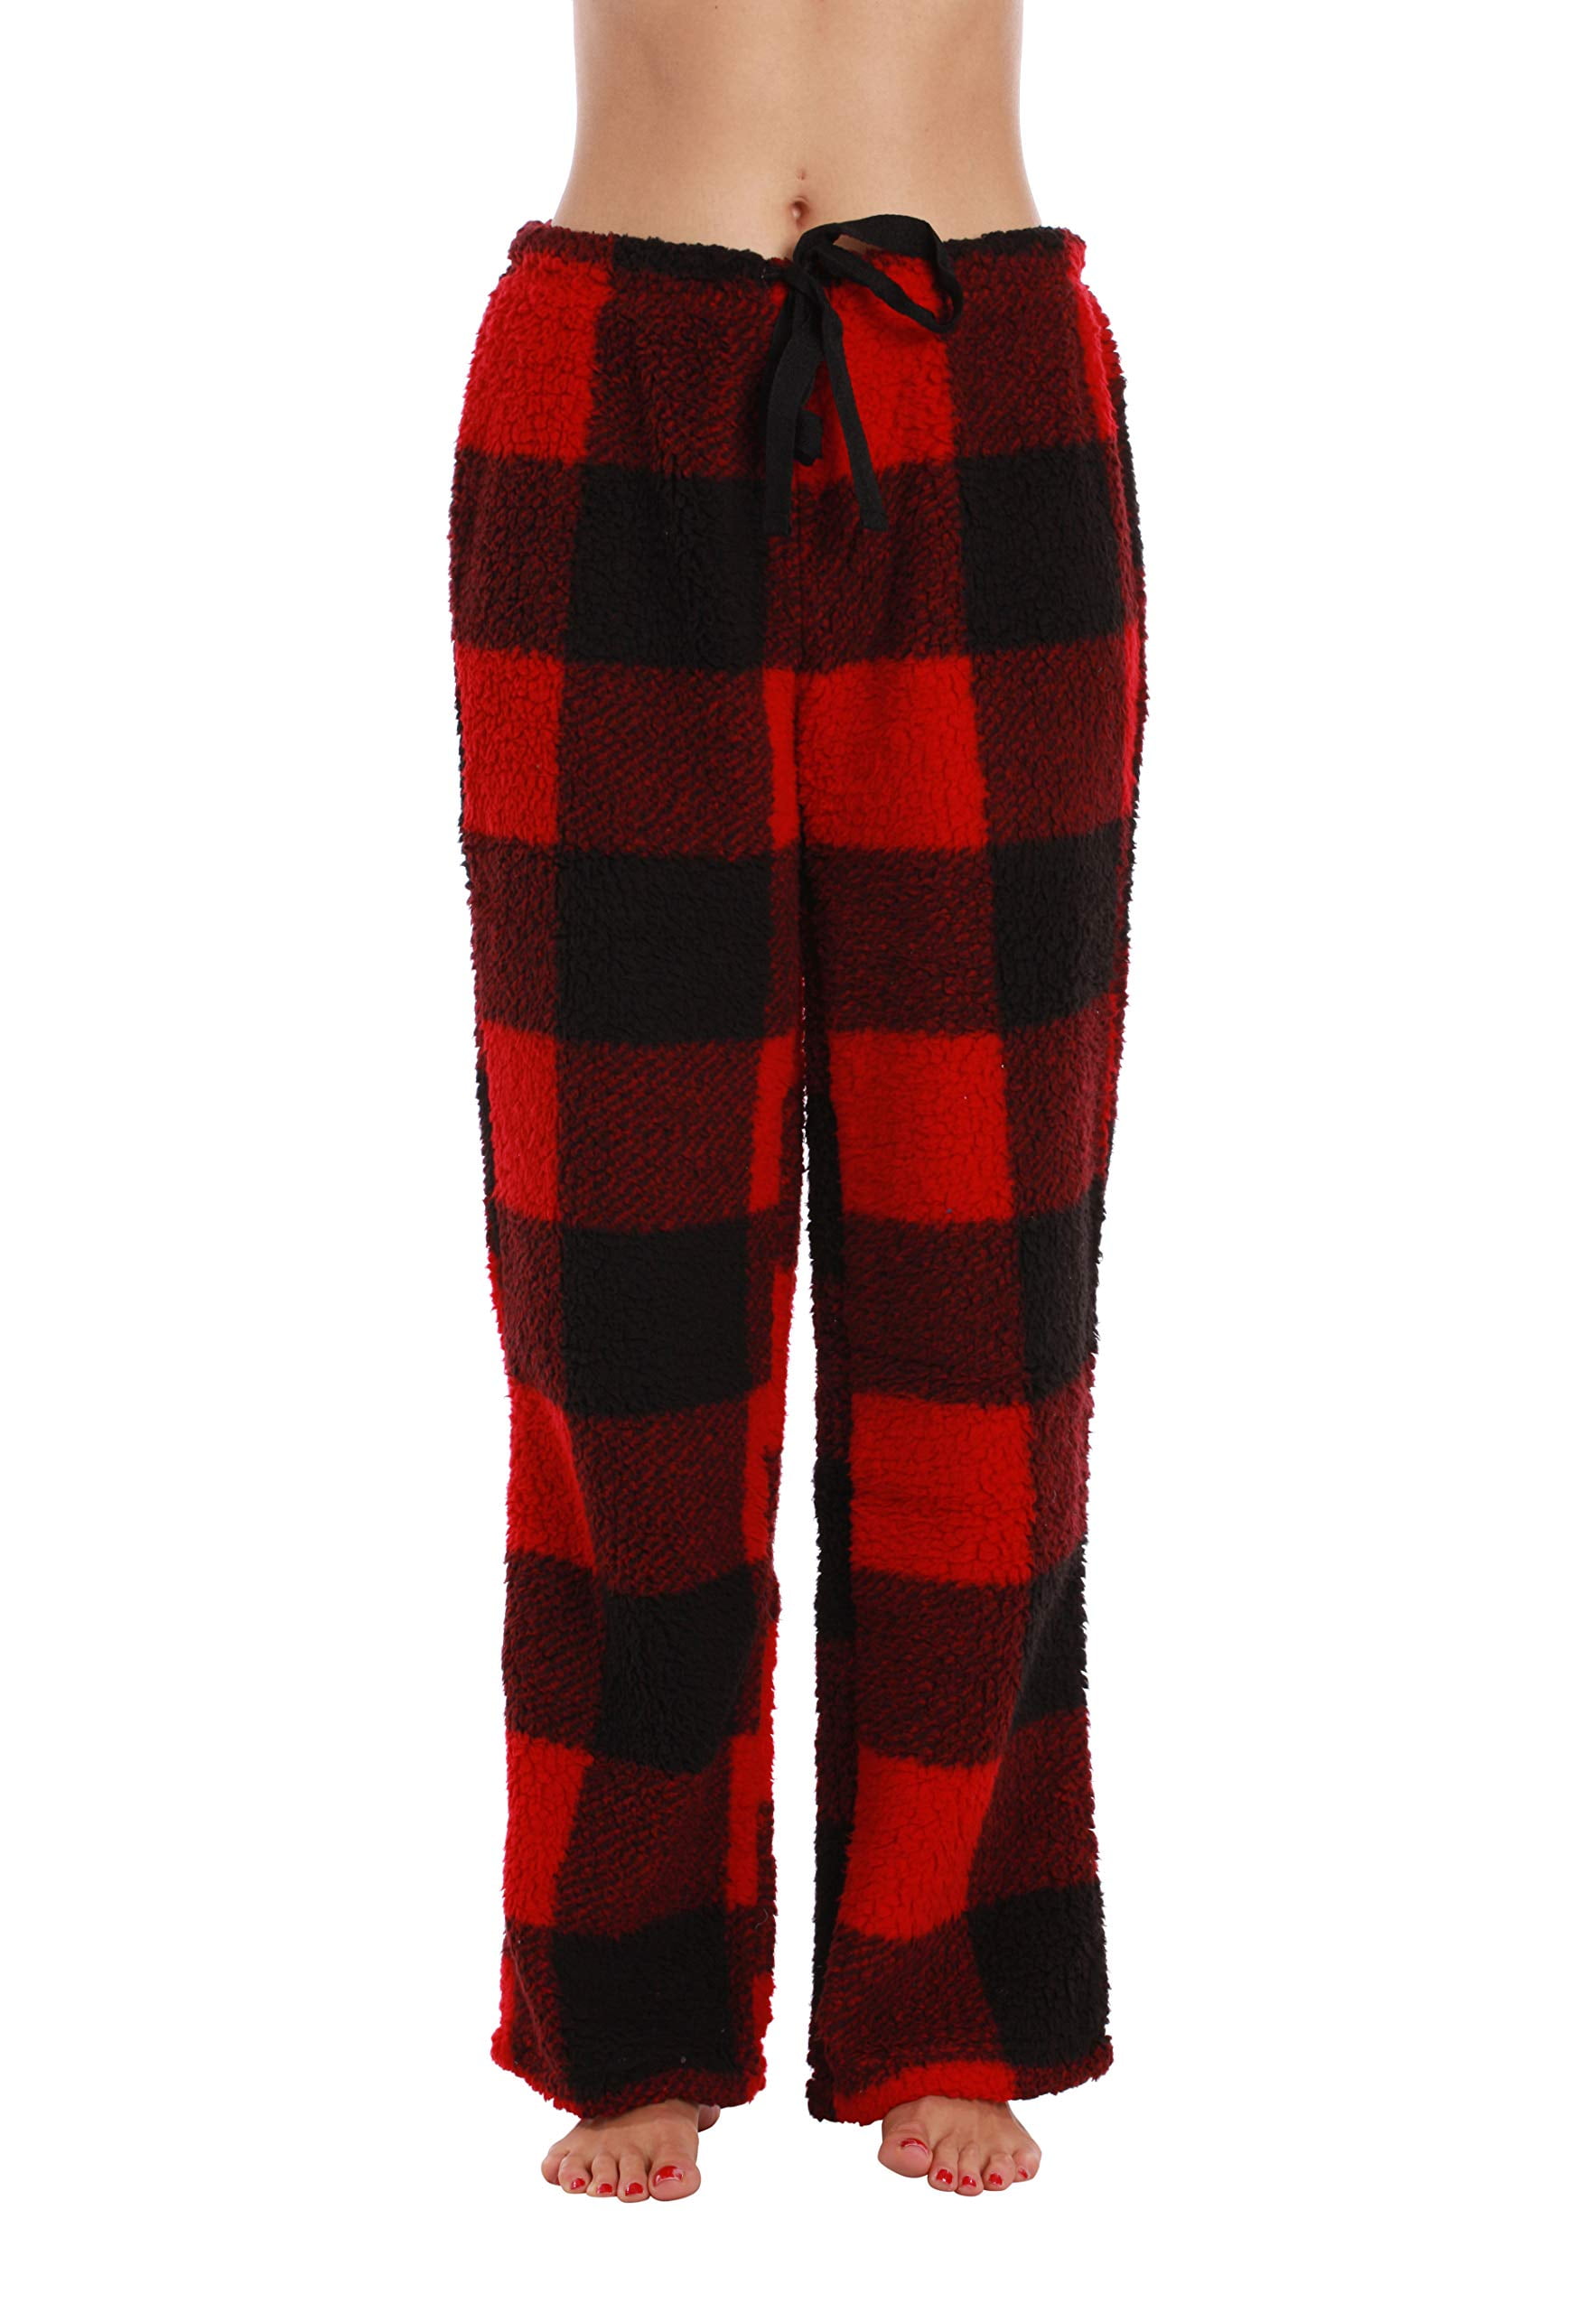 Just Love Plush Pajama Pants for Girls 45501-REDBLK-6X 